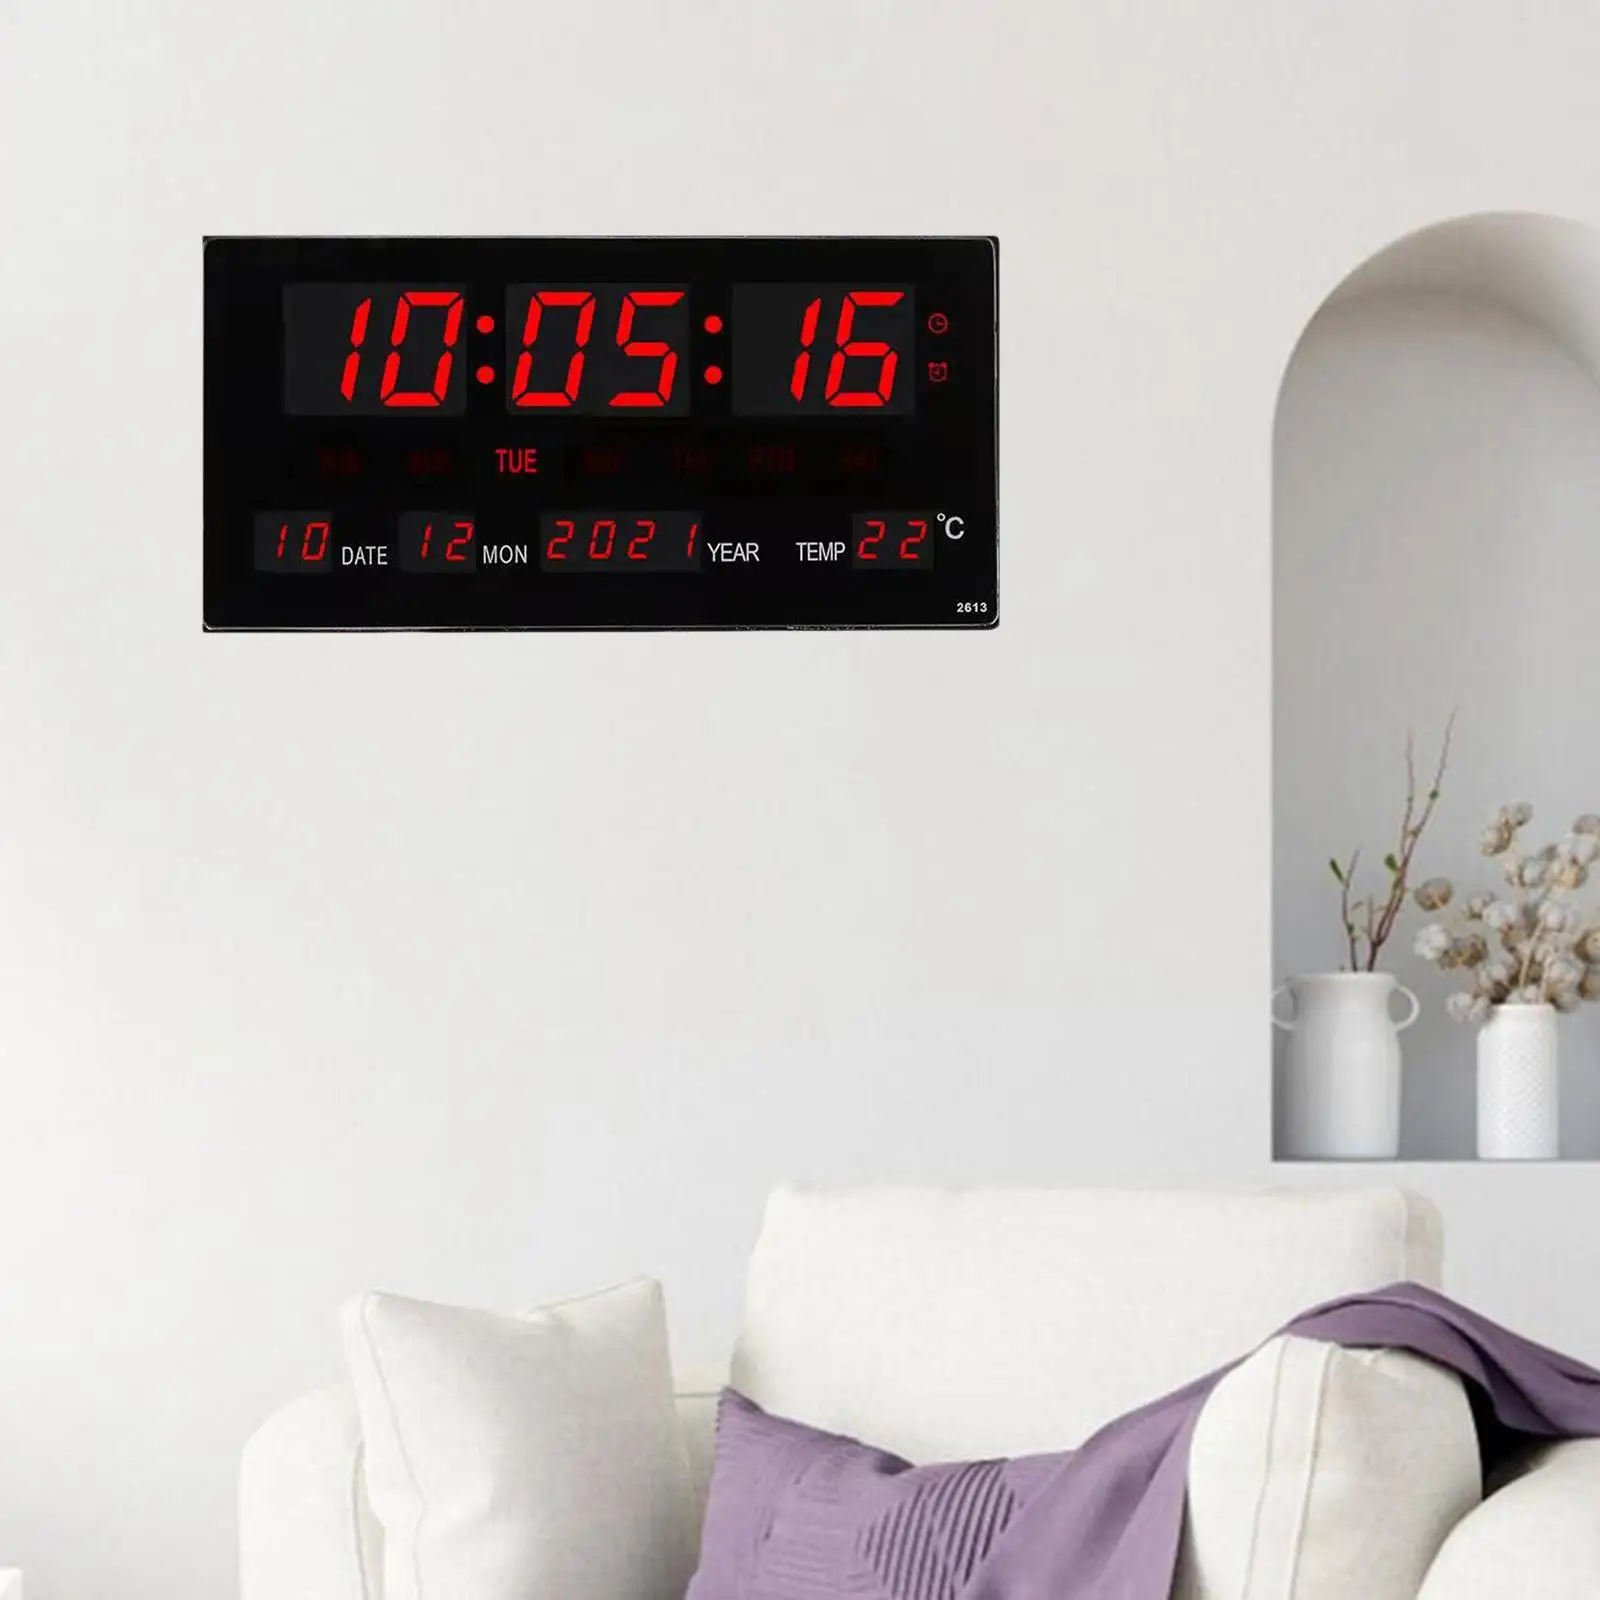 Digital Wall Clock LED Display Alarm Clocks for Restaurant Desk Bedroom Study Room